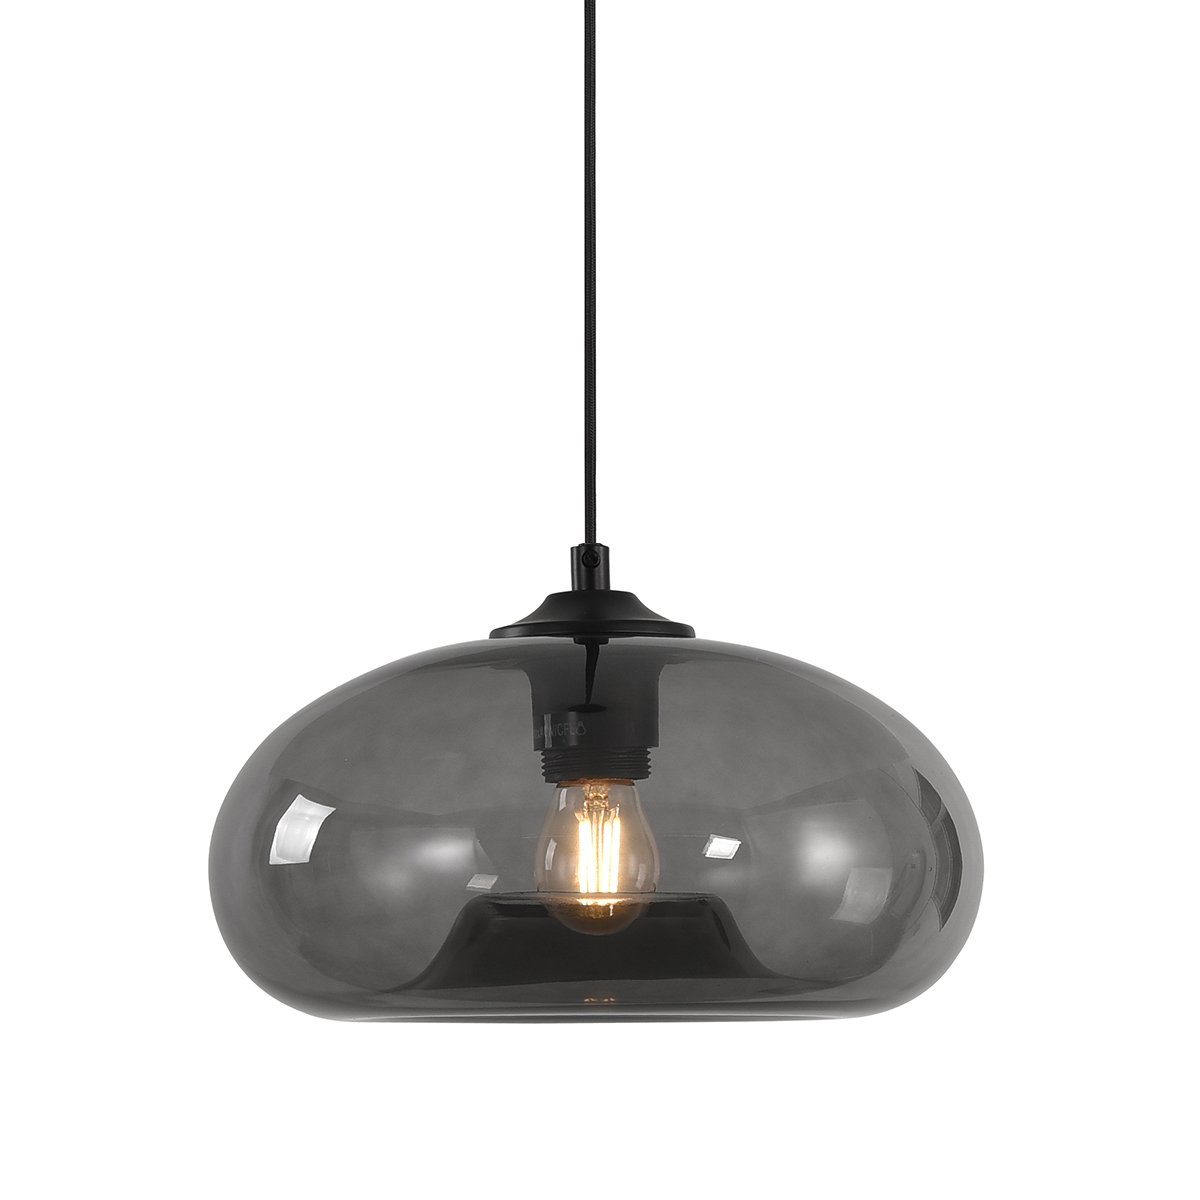 Hanglamp retro grijs rookglas Bobbio - Ø 28 cm